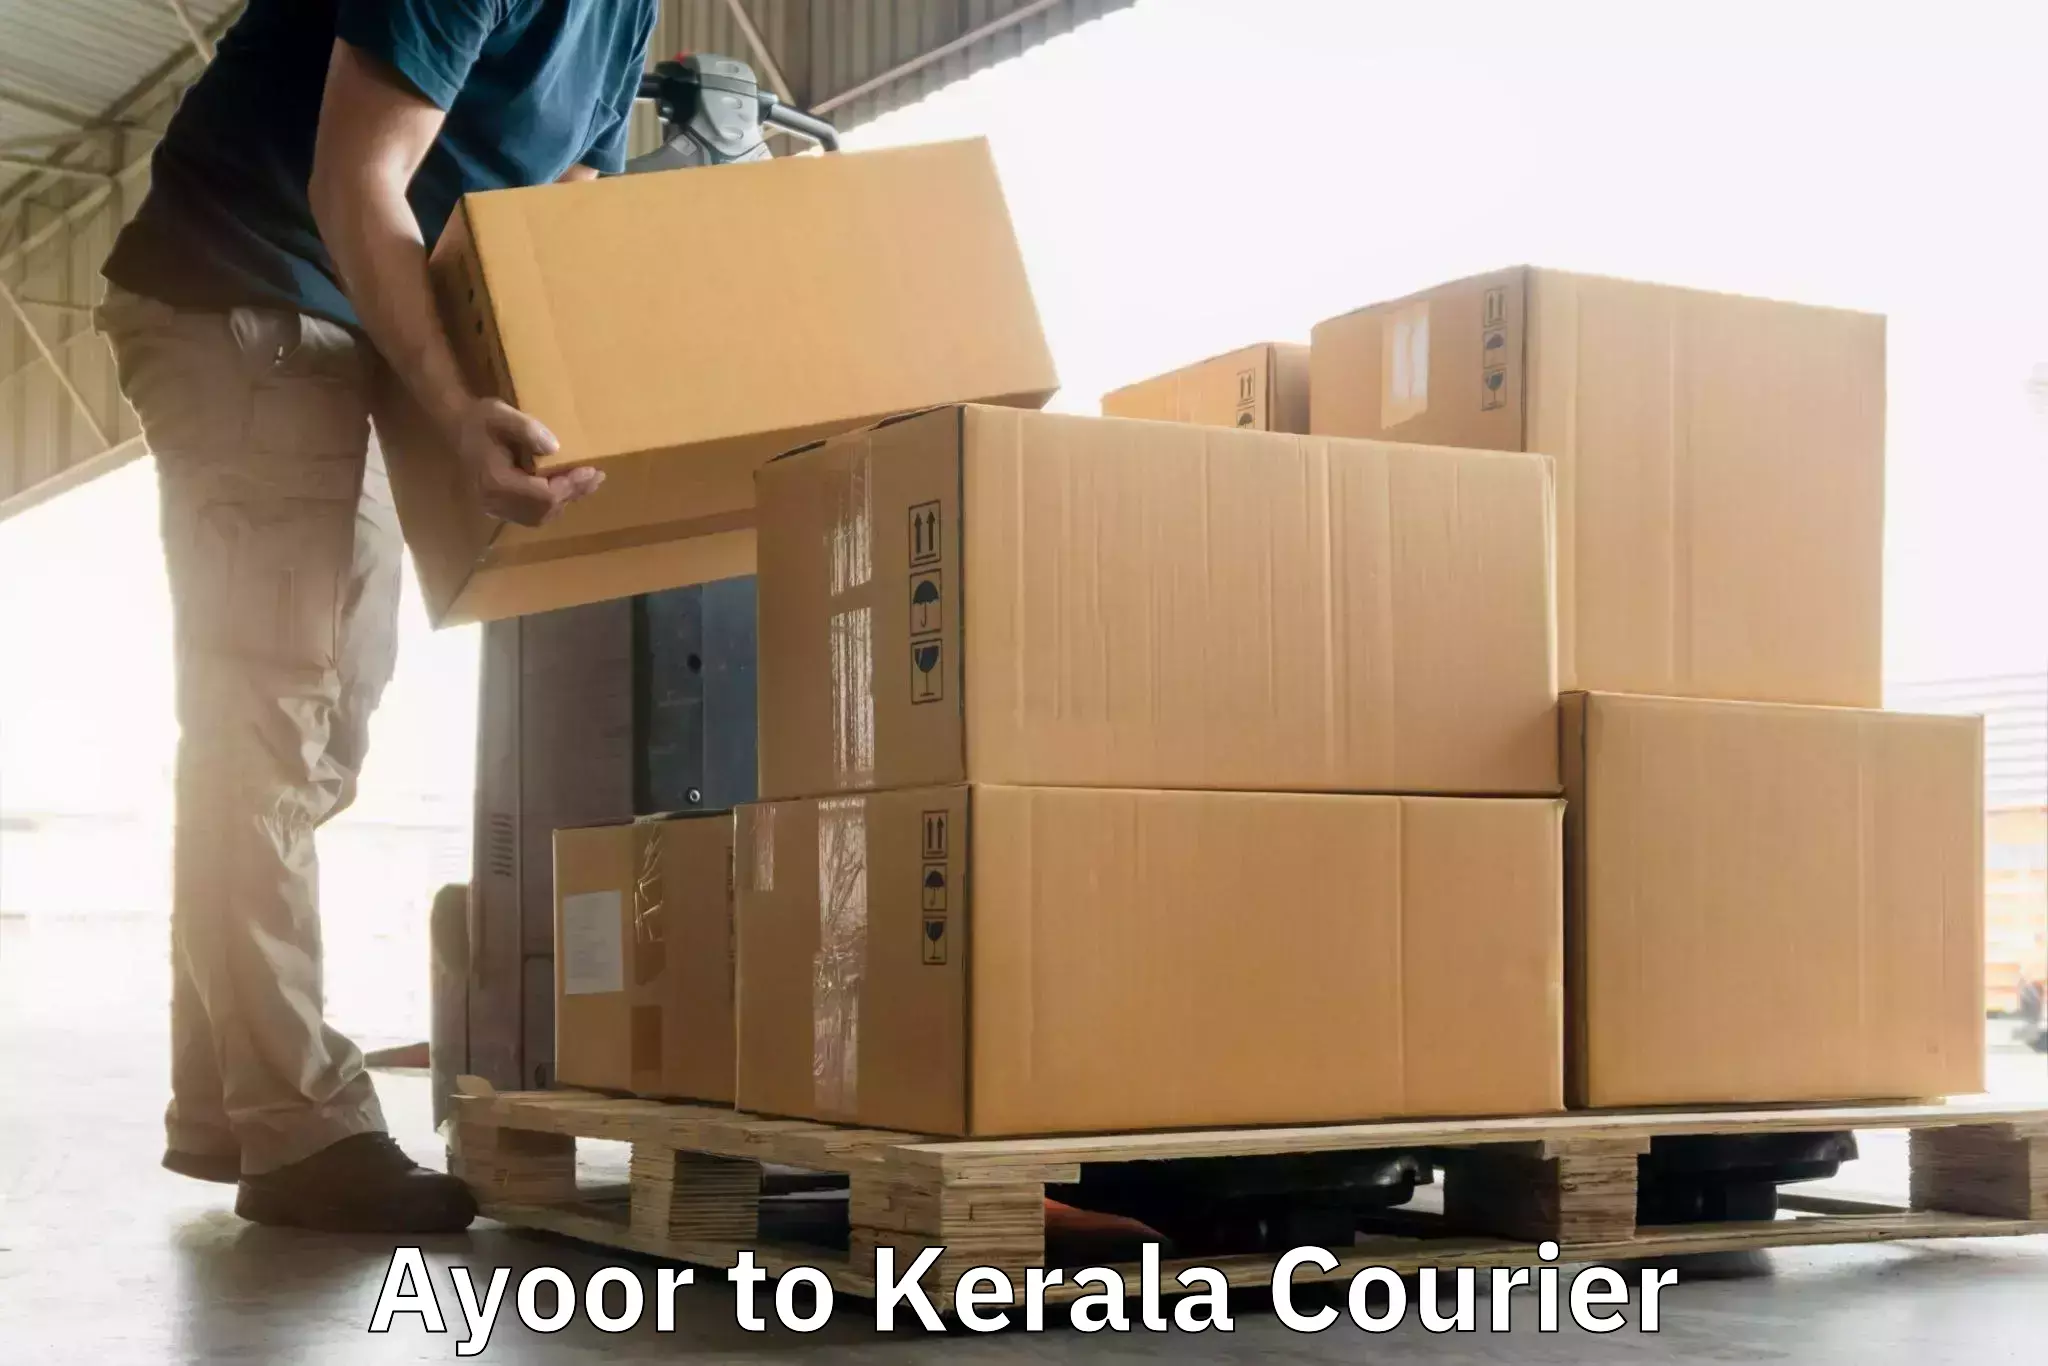 Flexible delivery scheduling Ayoor to Kodungallur